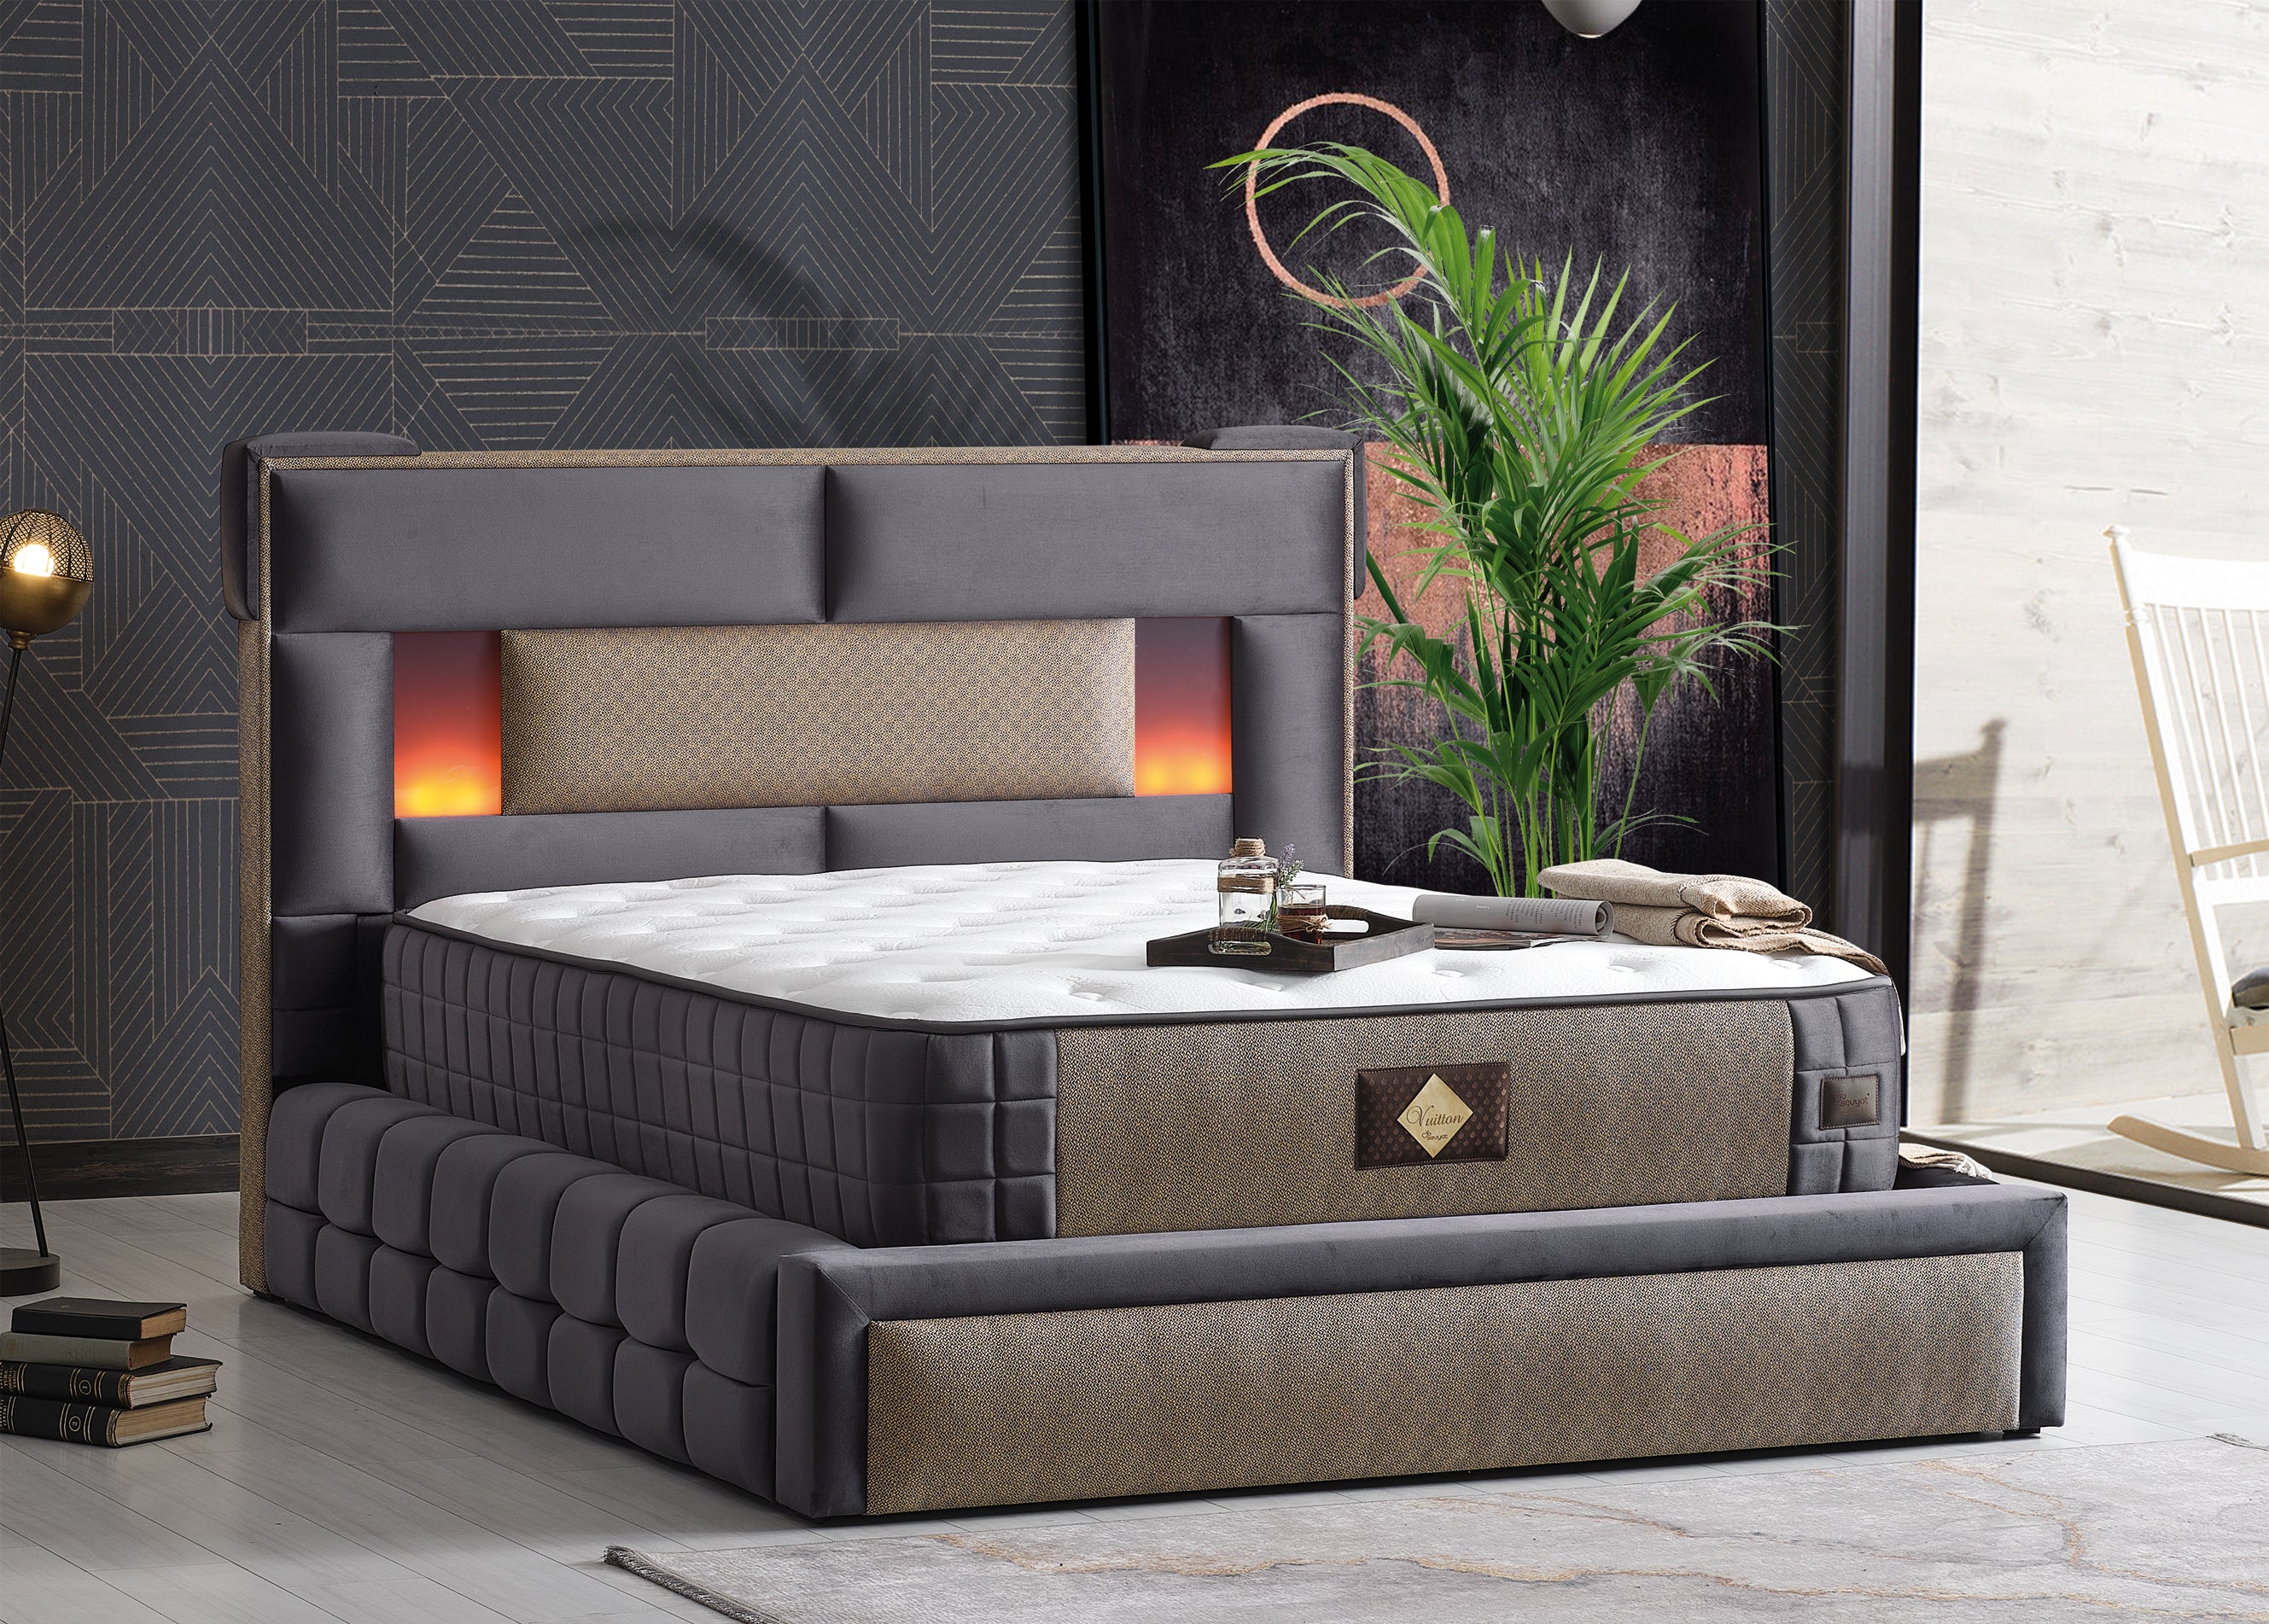 Vuitton Sleeping Set – The Ottoman Beds